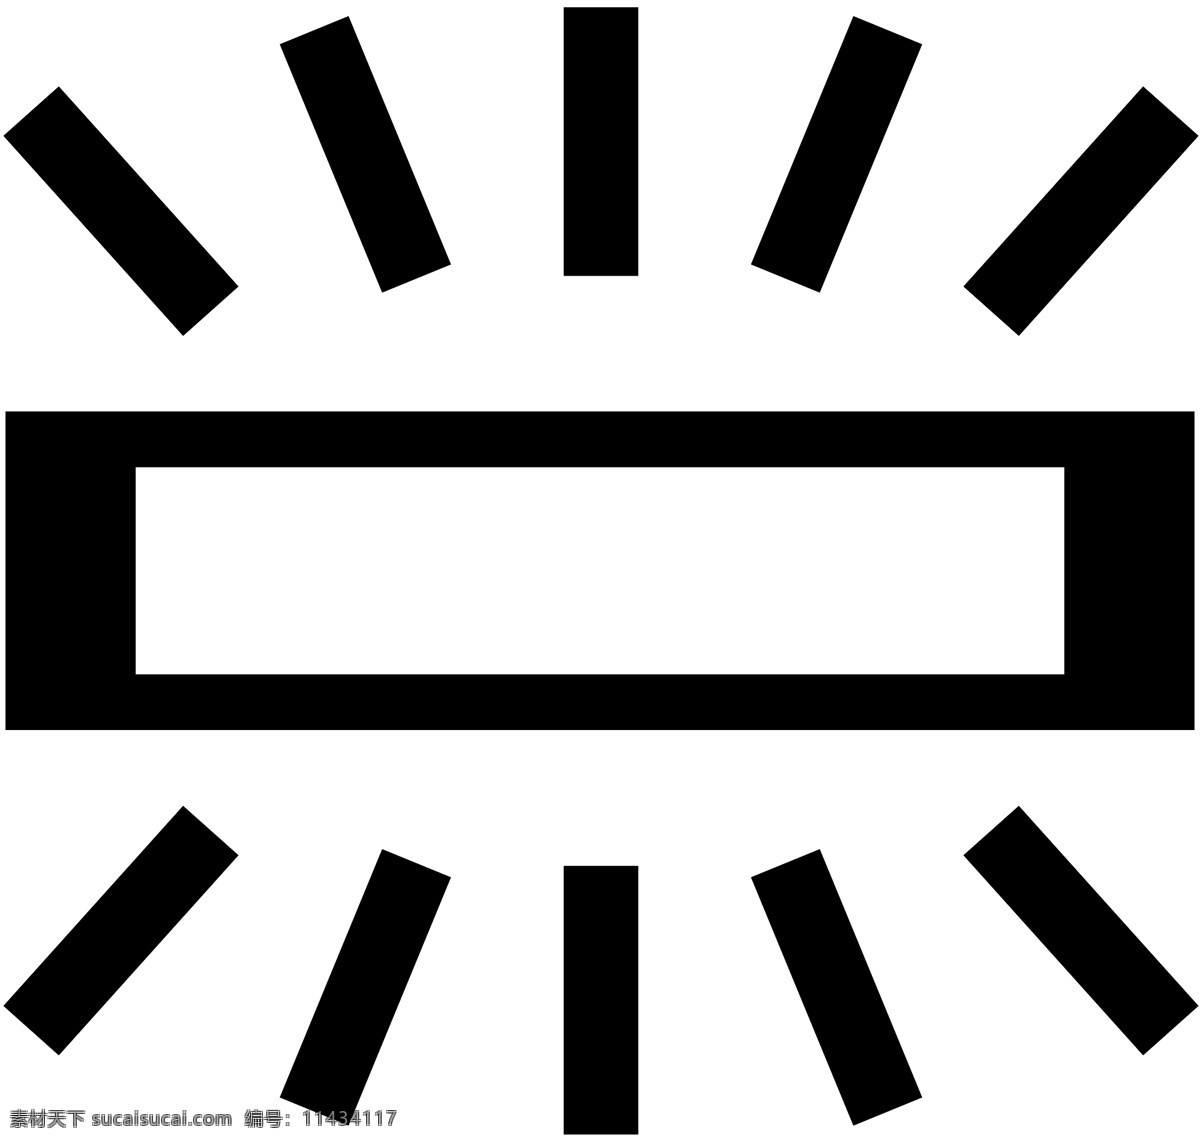 标识 标志 图标 白炽灯的标识 标图 小标志 公共标识标志 标识标志图标 矢量